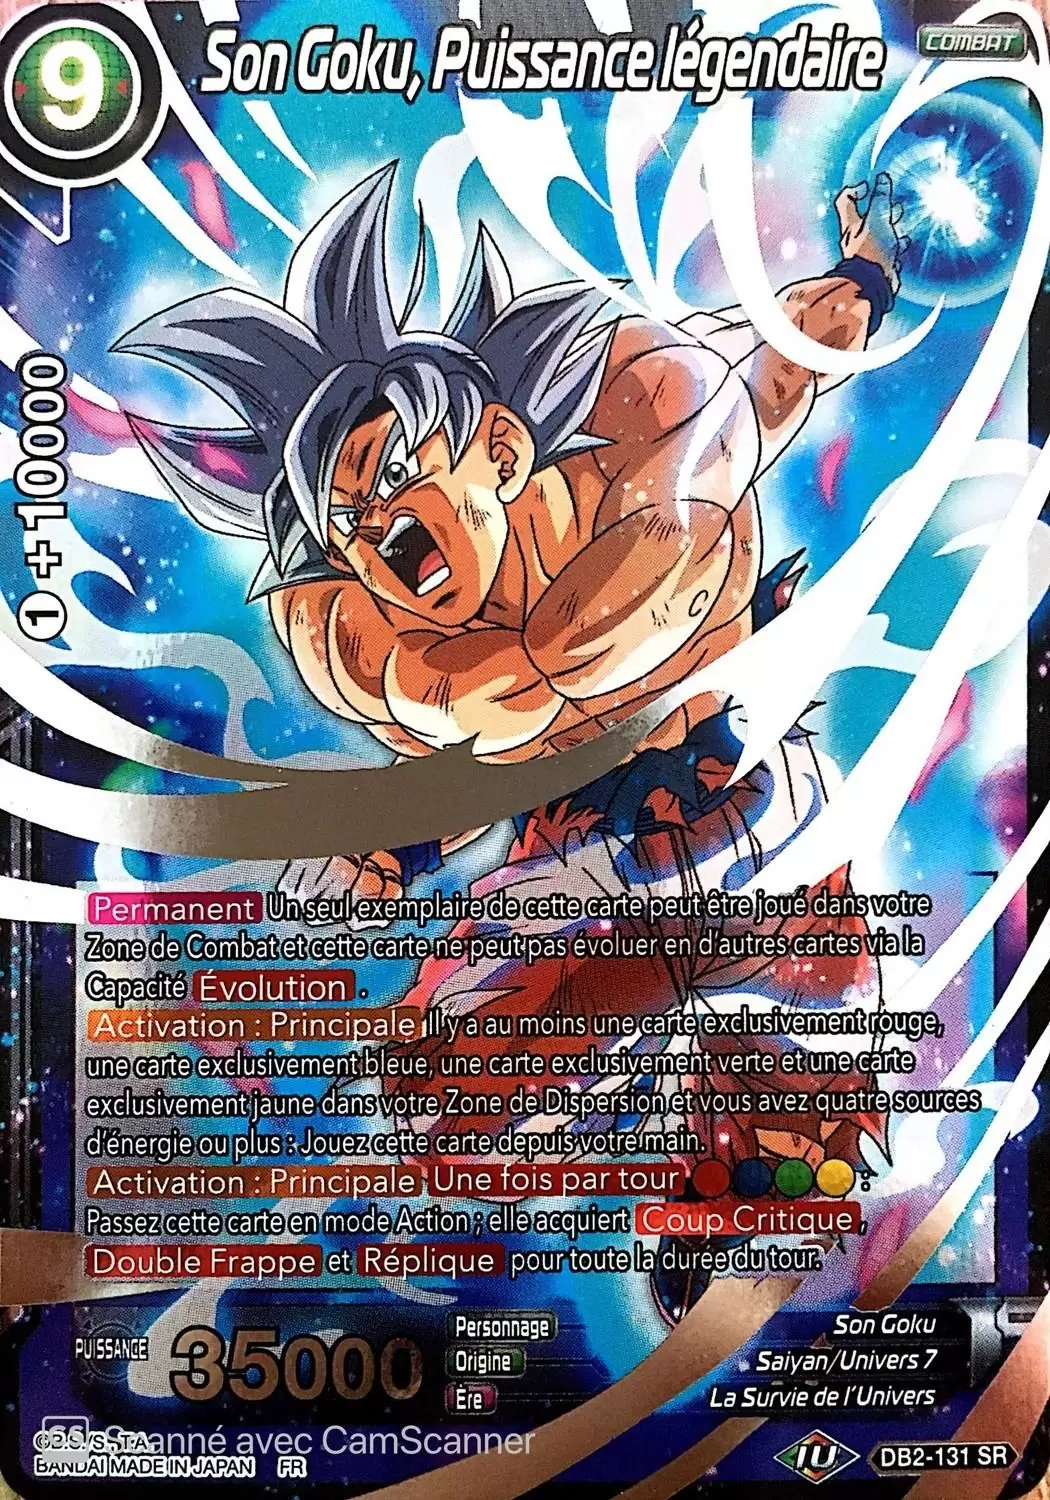 Divine Multiverse [DB2] - Son Goku, Puissance légendaire